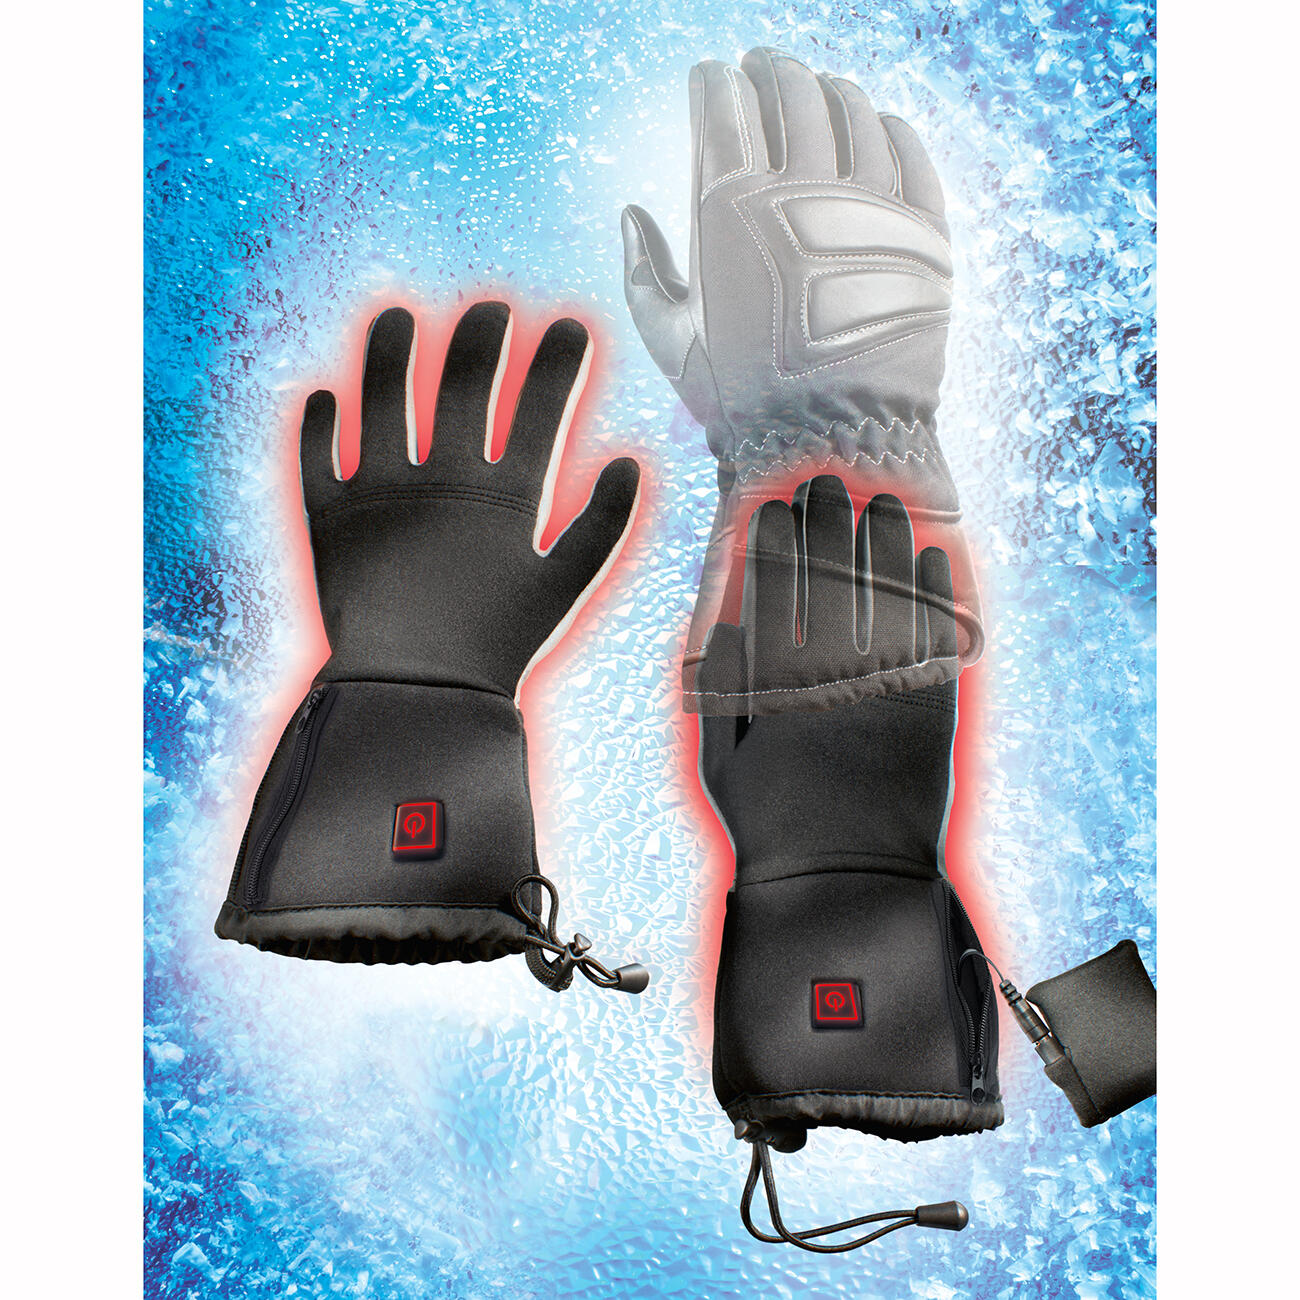 Camping Jagd Wasserdicht Touchscreen Heizung Thermo Handschuhe zu Winter Outdoor Klettern Radfahren Snowboarden Beheizte Handschuhe Damen Elektrische Beheizbare Handschuhe mit Wiederaufladbare 